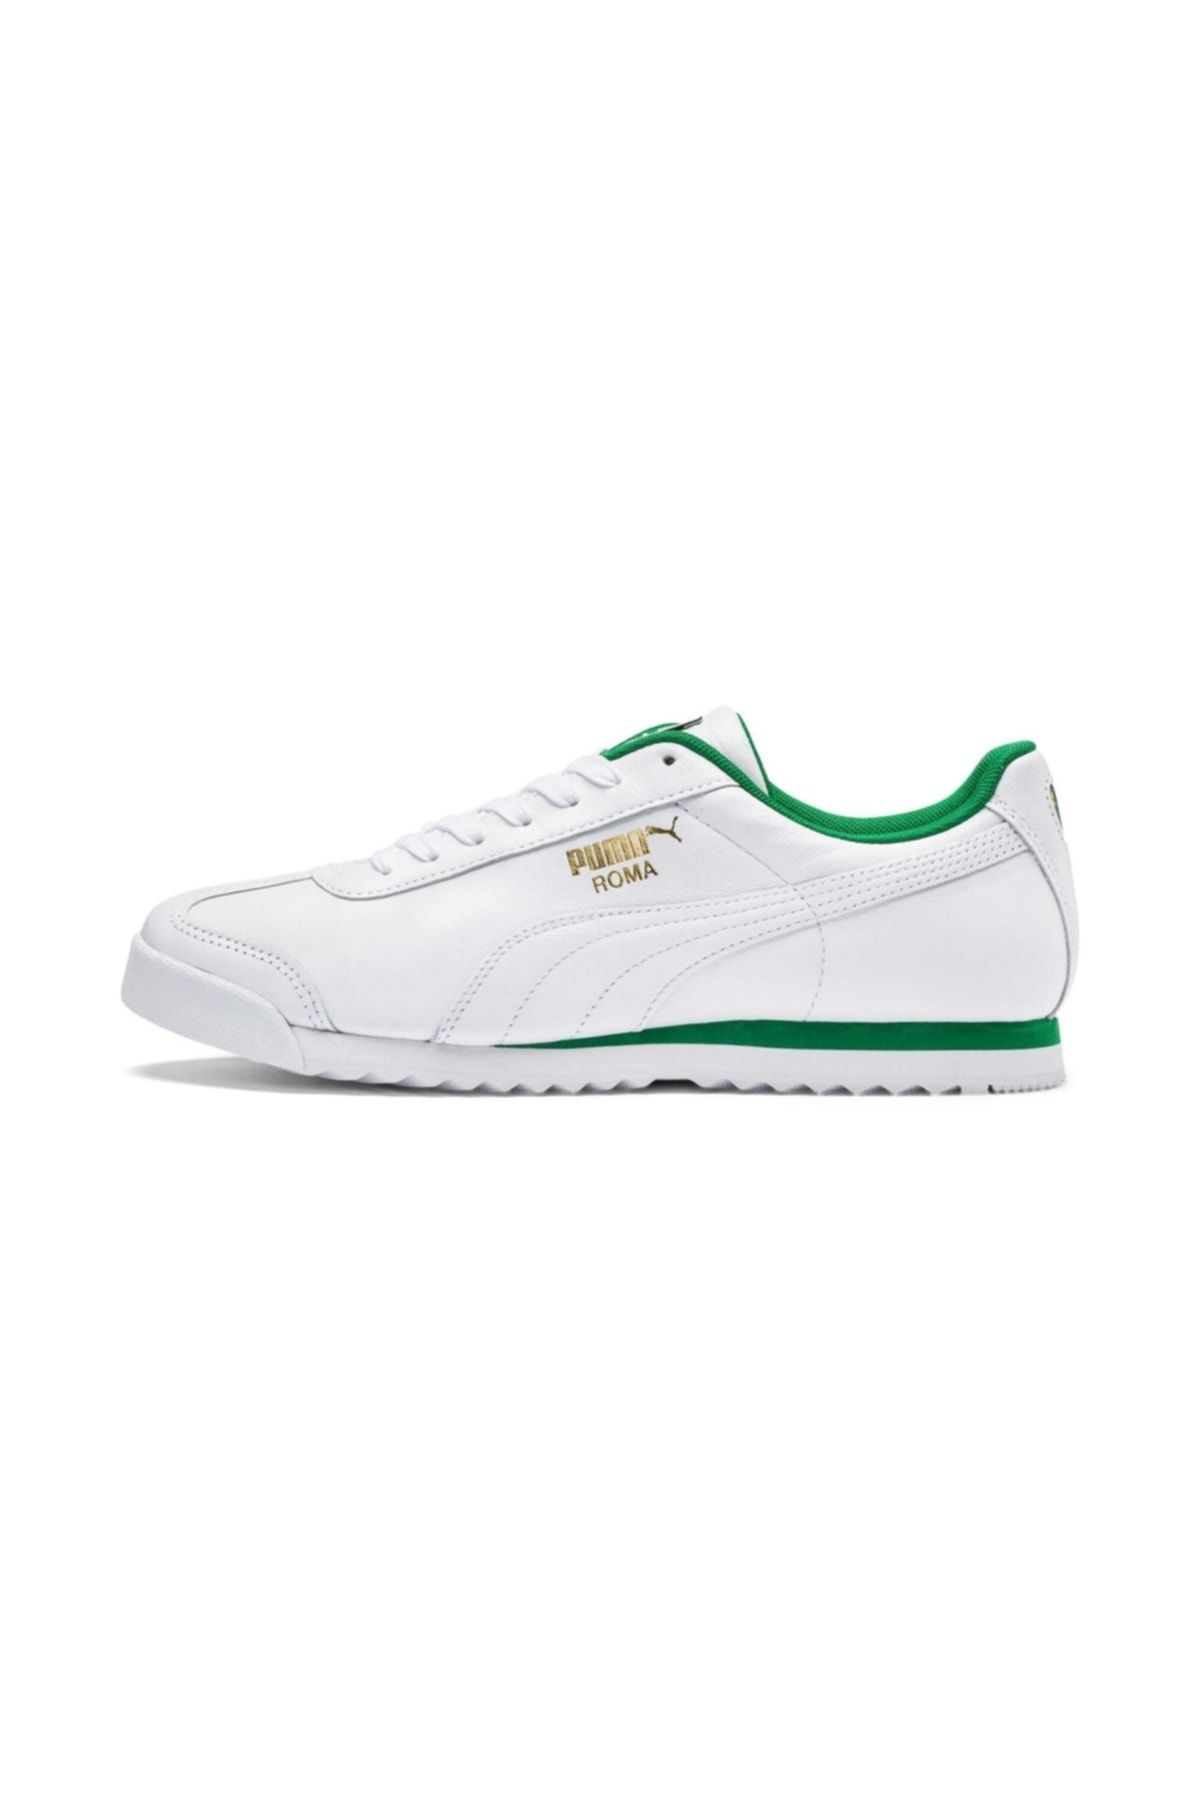 Puma Erkek Yeşil Beyaz Roma Classıc Günlük Spor Ayakkabı 365598-03